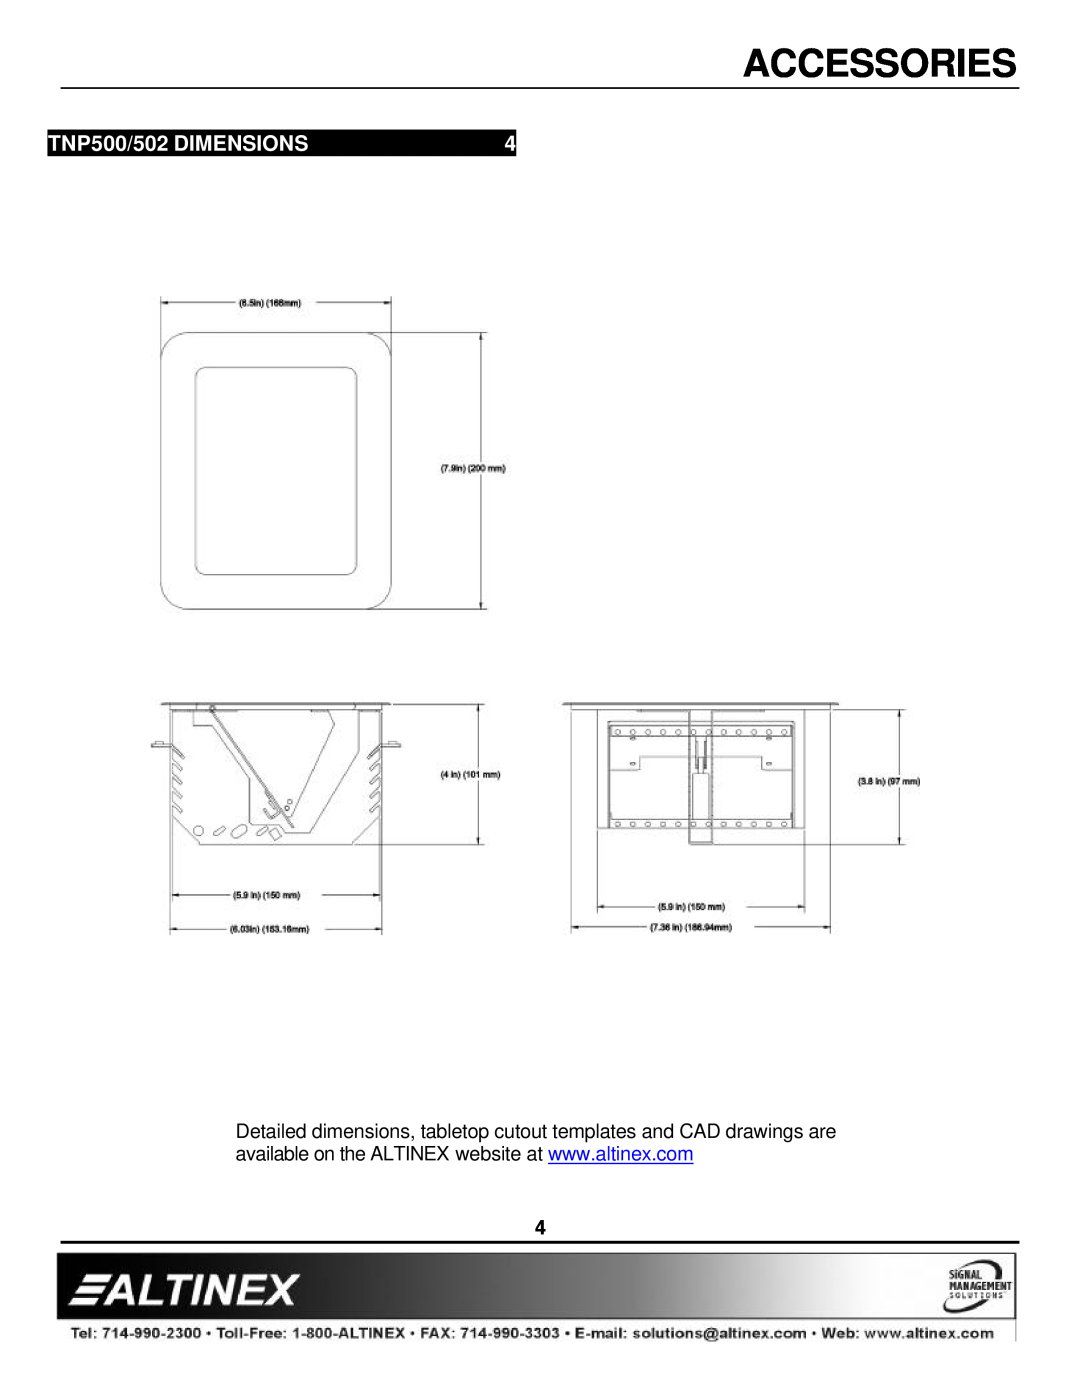 Altinex manual TNP500/502 DIMENSIONS, Accessories 